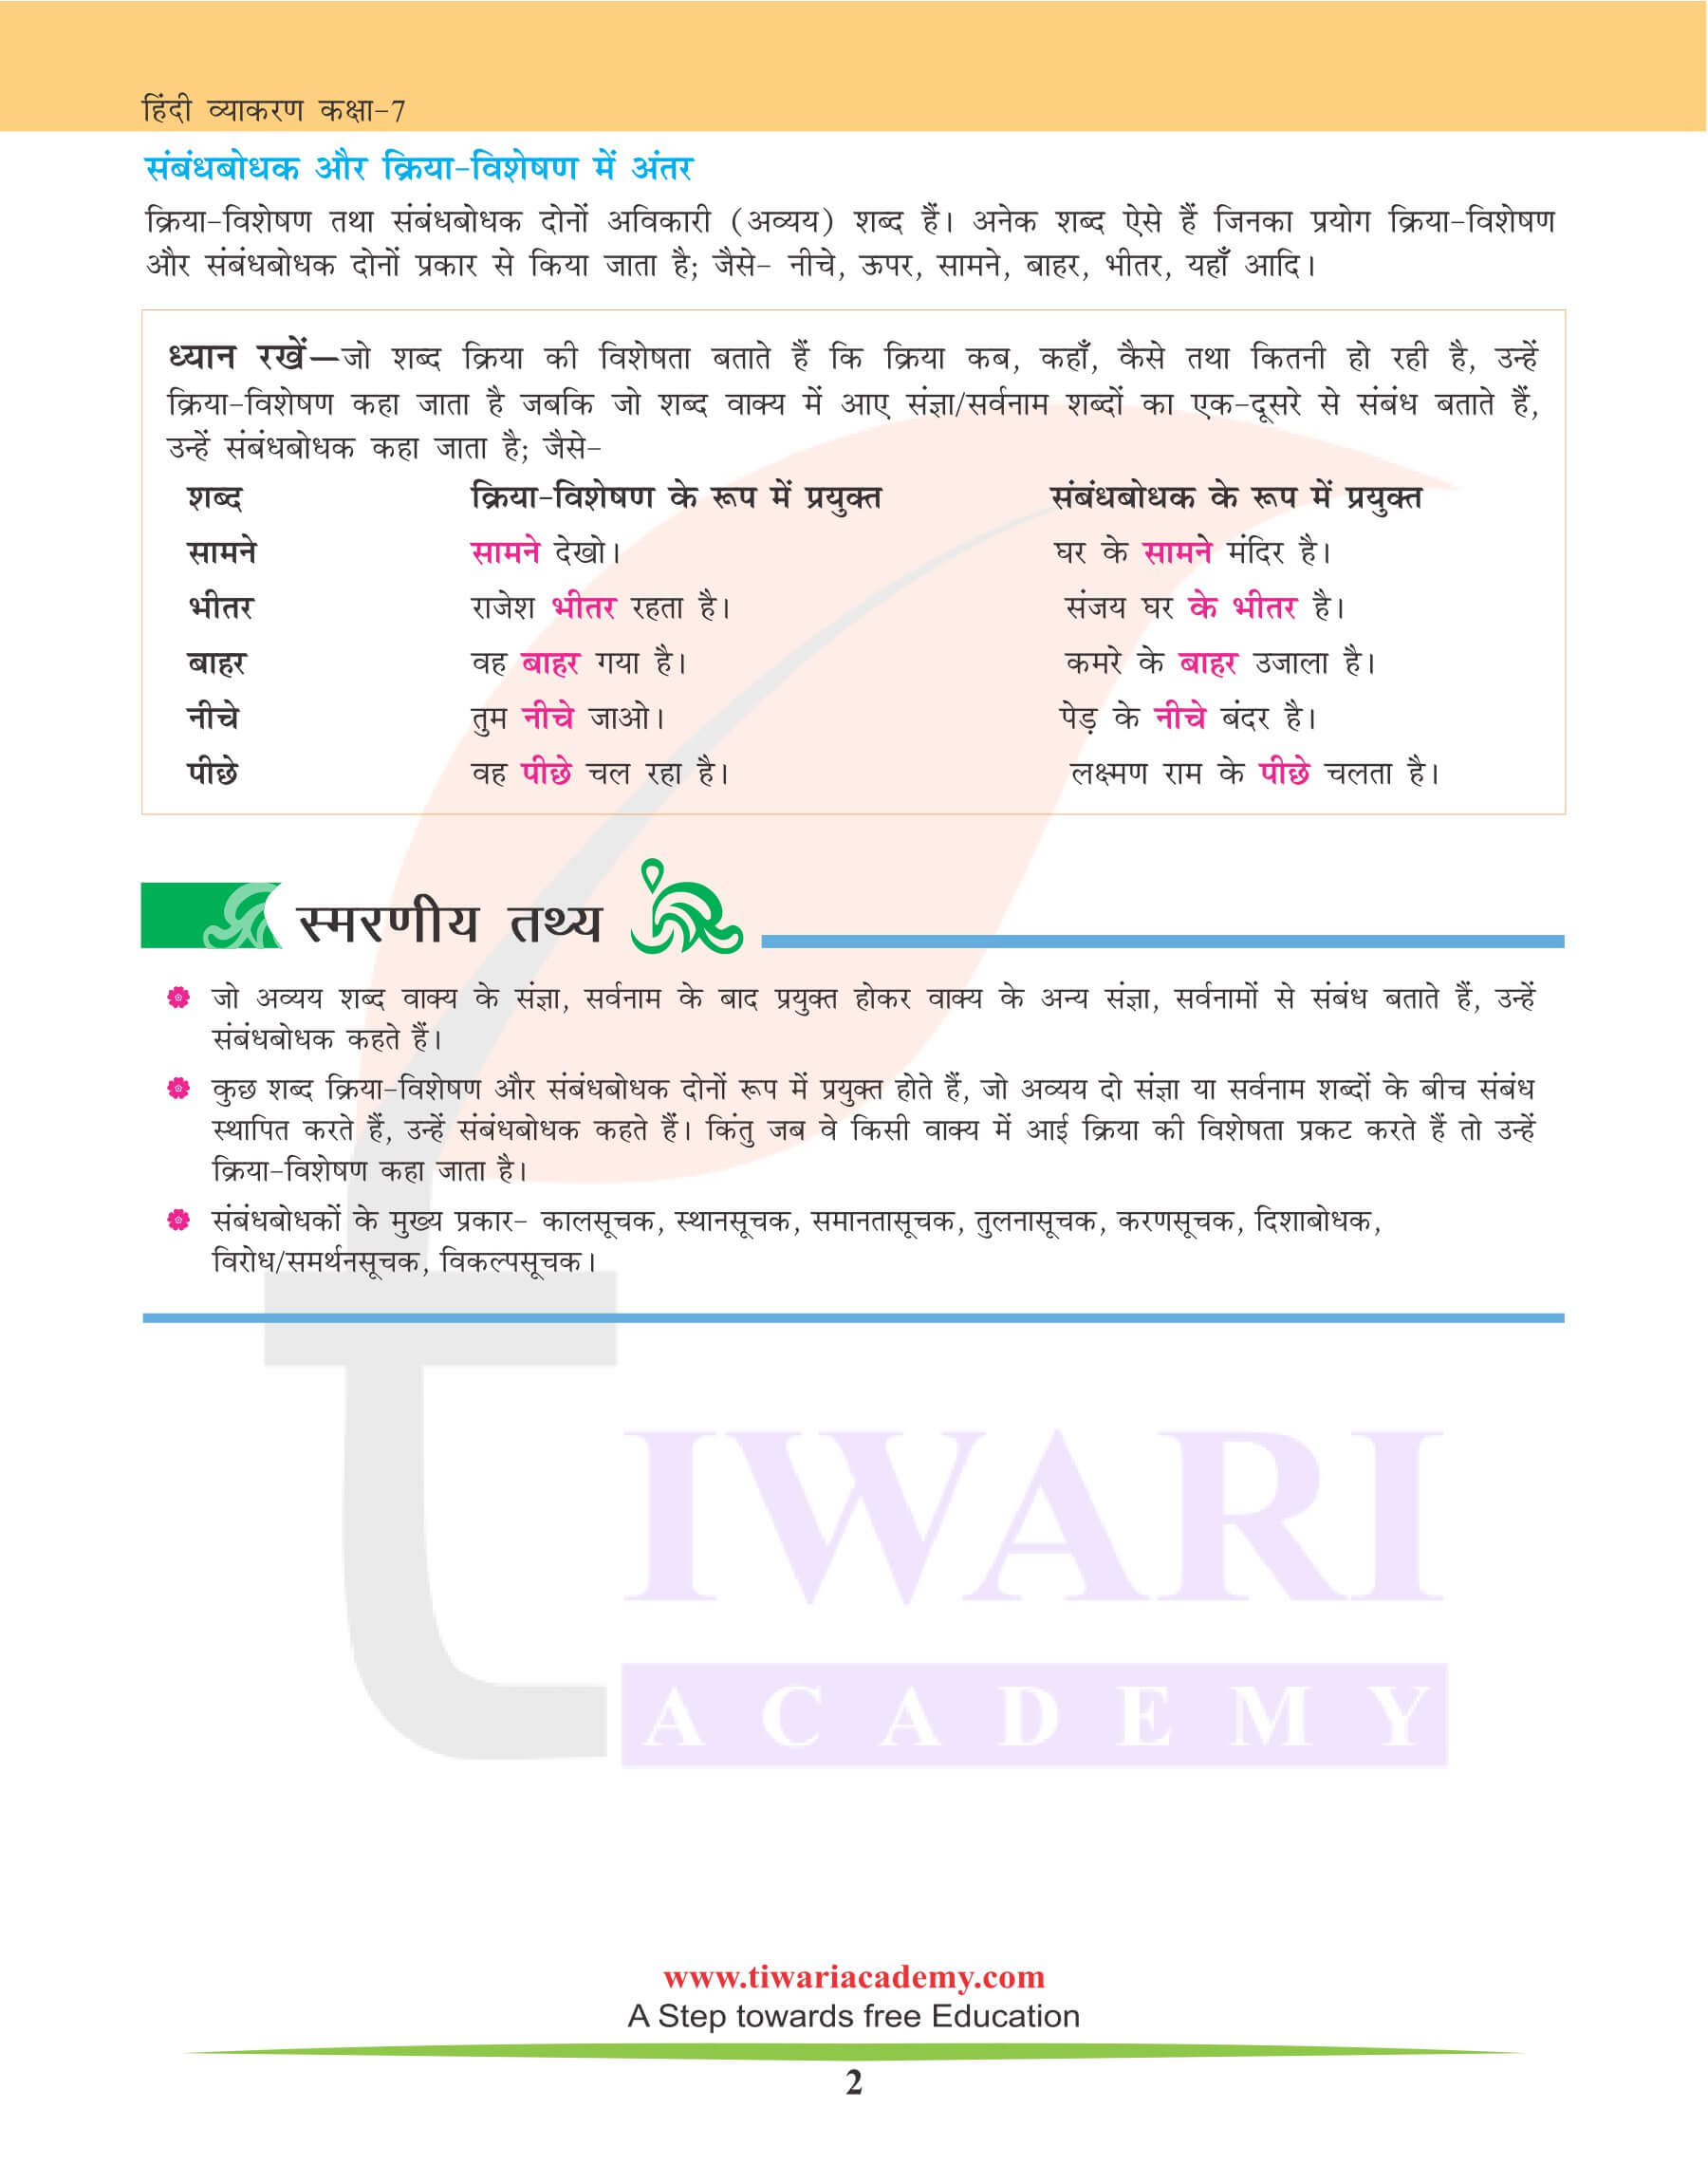 कक्षा 7 हिंदी व्याकरण में संबंधबोधक